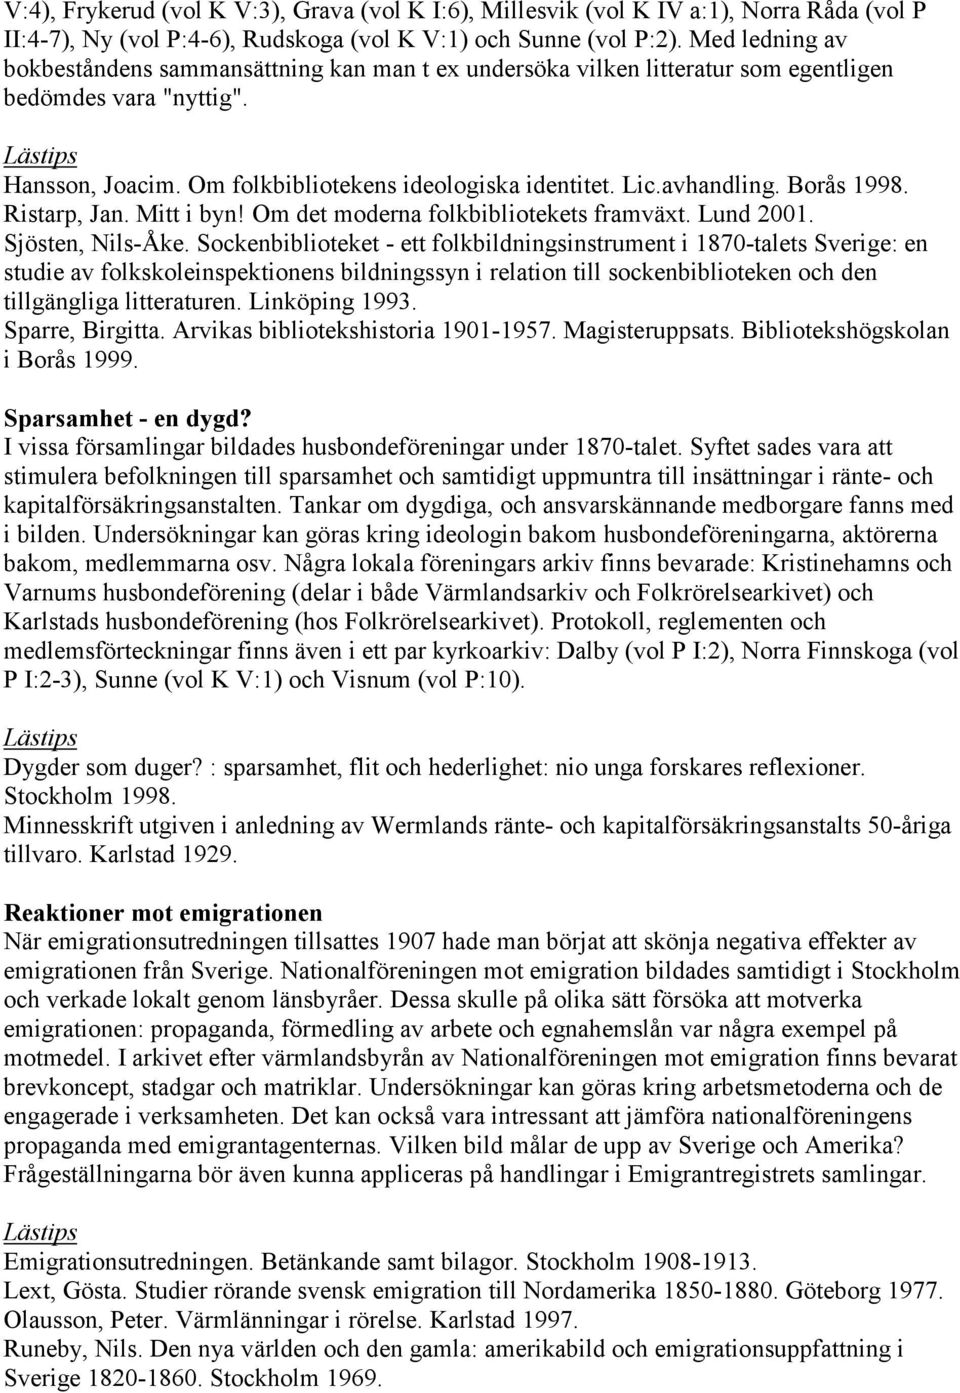 Borås 1998. Ristarp, Jan. Mitt i byn! Om det moderna folkbibliotekets framväxt. Lund 2001. Sjösten, Nils-Åke.